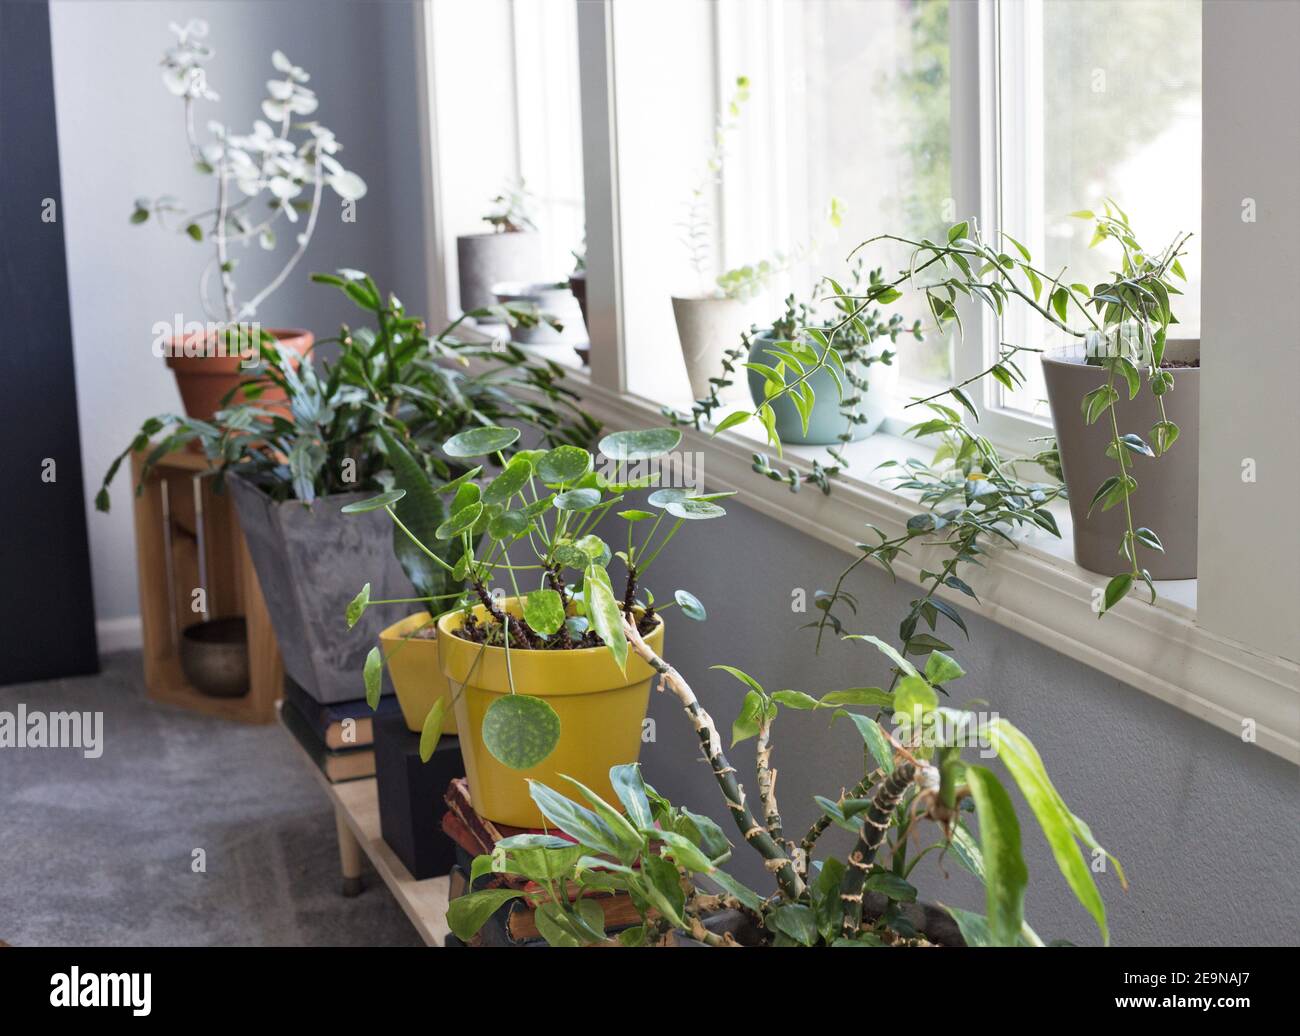 Plantes de maison dans des pots dans la fenêtre d'une maison. Banque D'Images